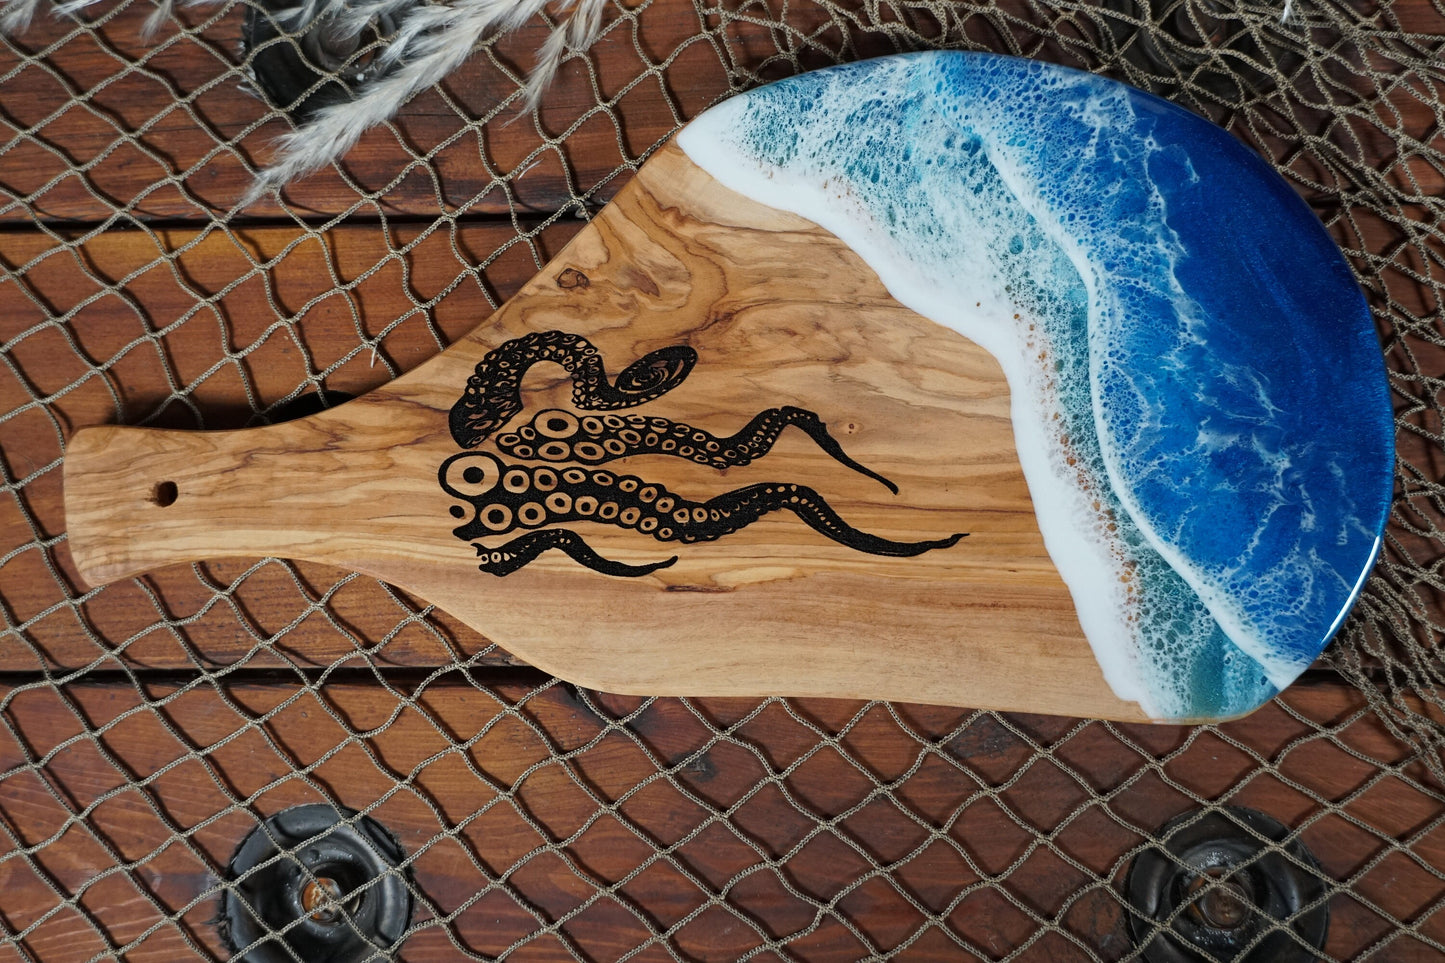 Kraken Ocean Waves Olive Wood Charcuterie Board/Serving Board